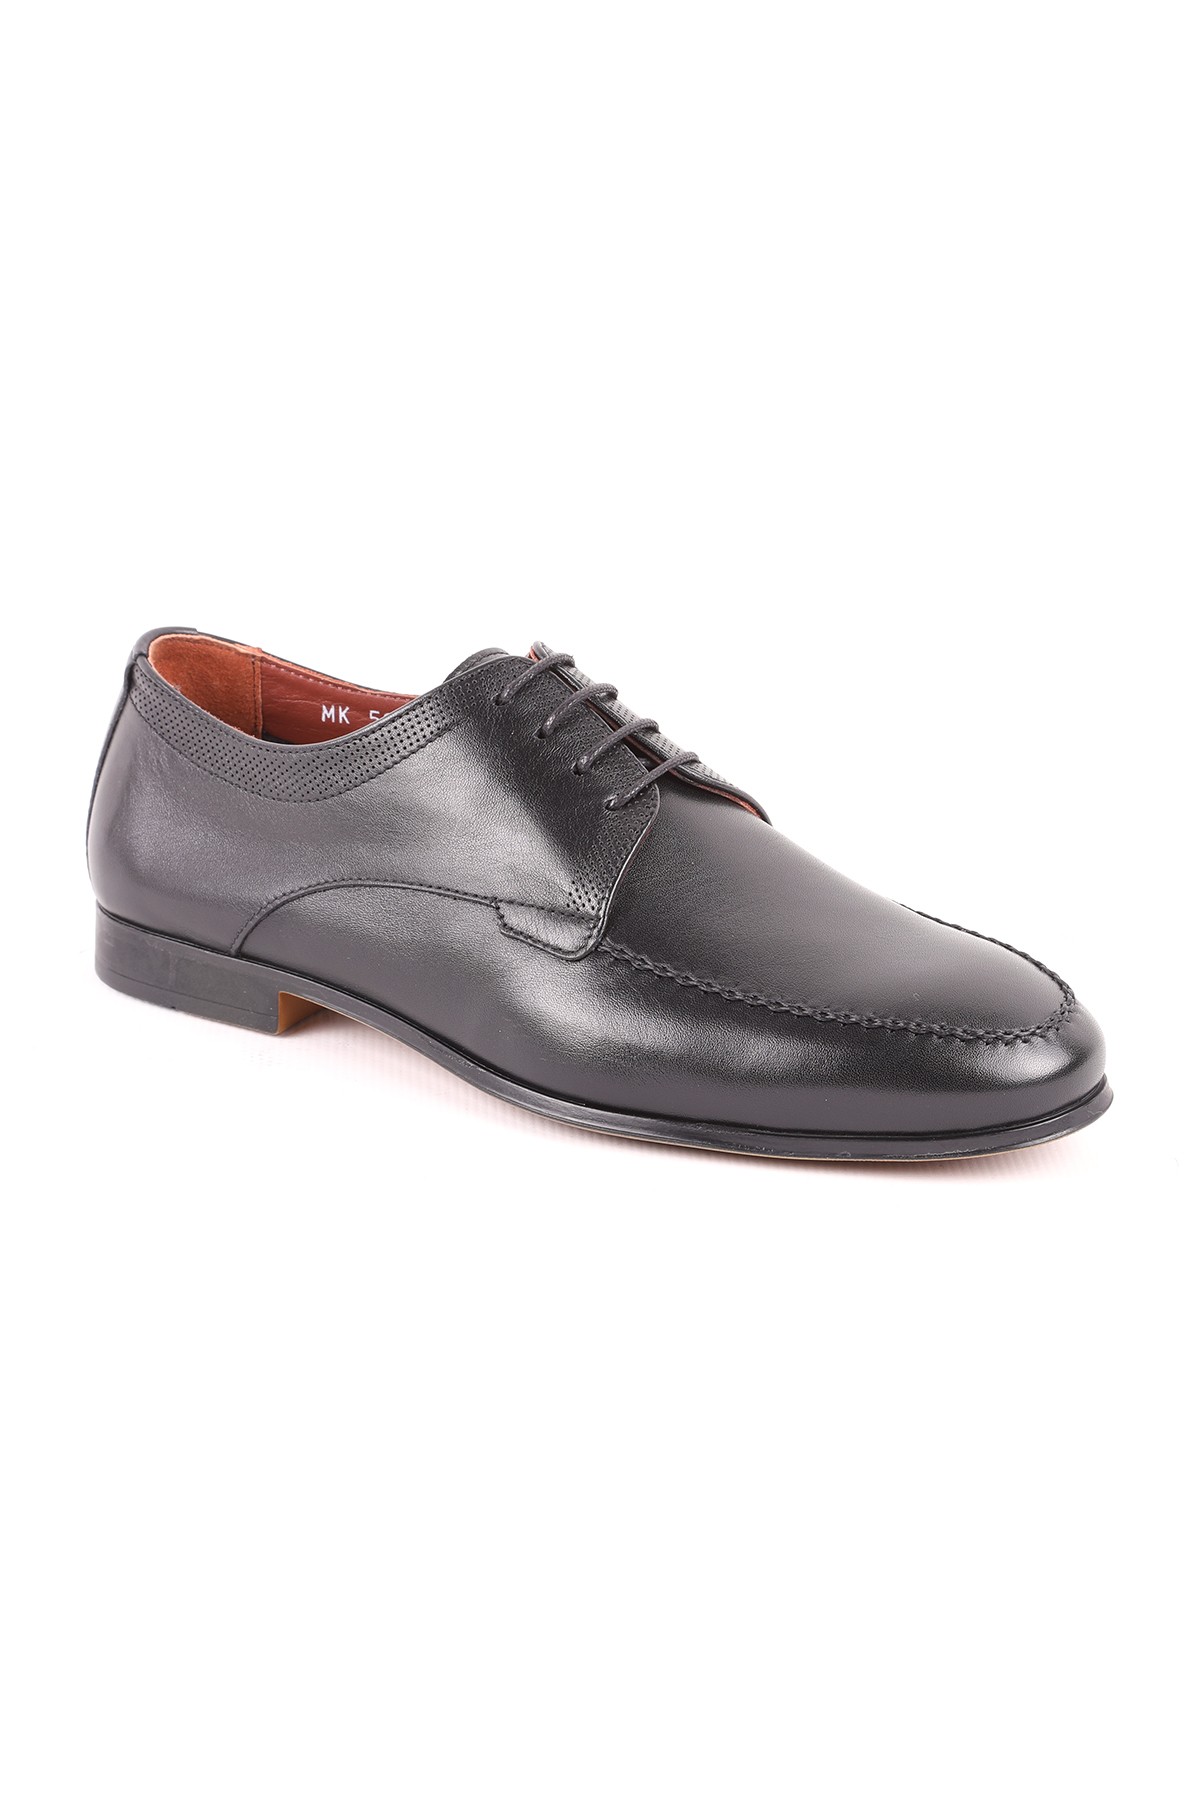 Libero L5249 Deri Erkek Klasik Ayakkabı LACİVERT - Siyah